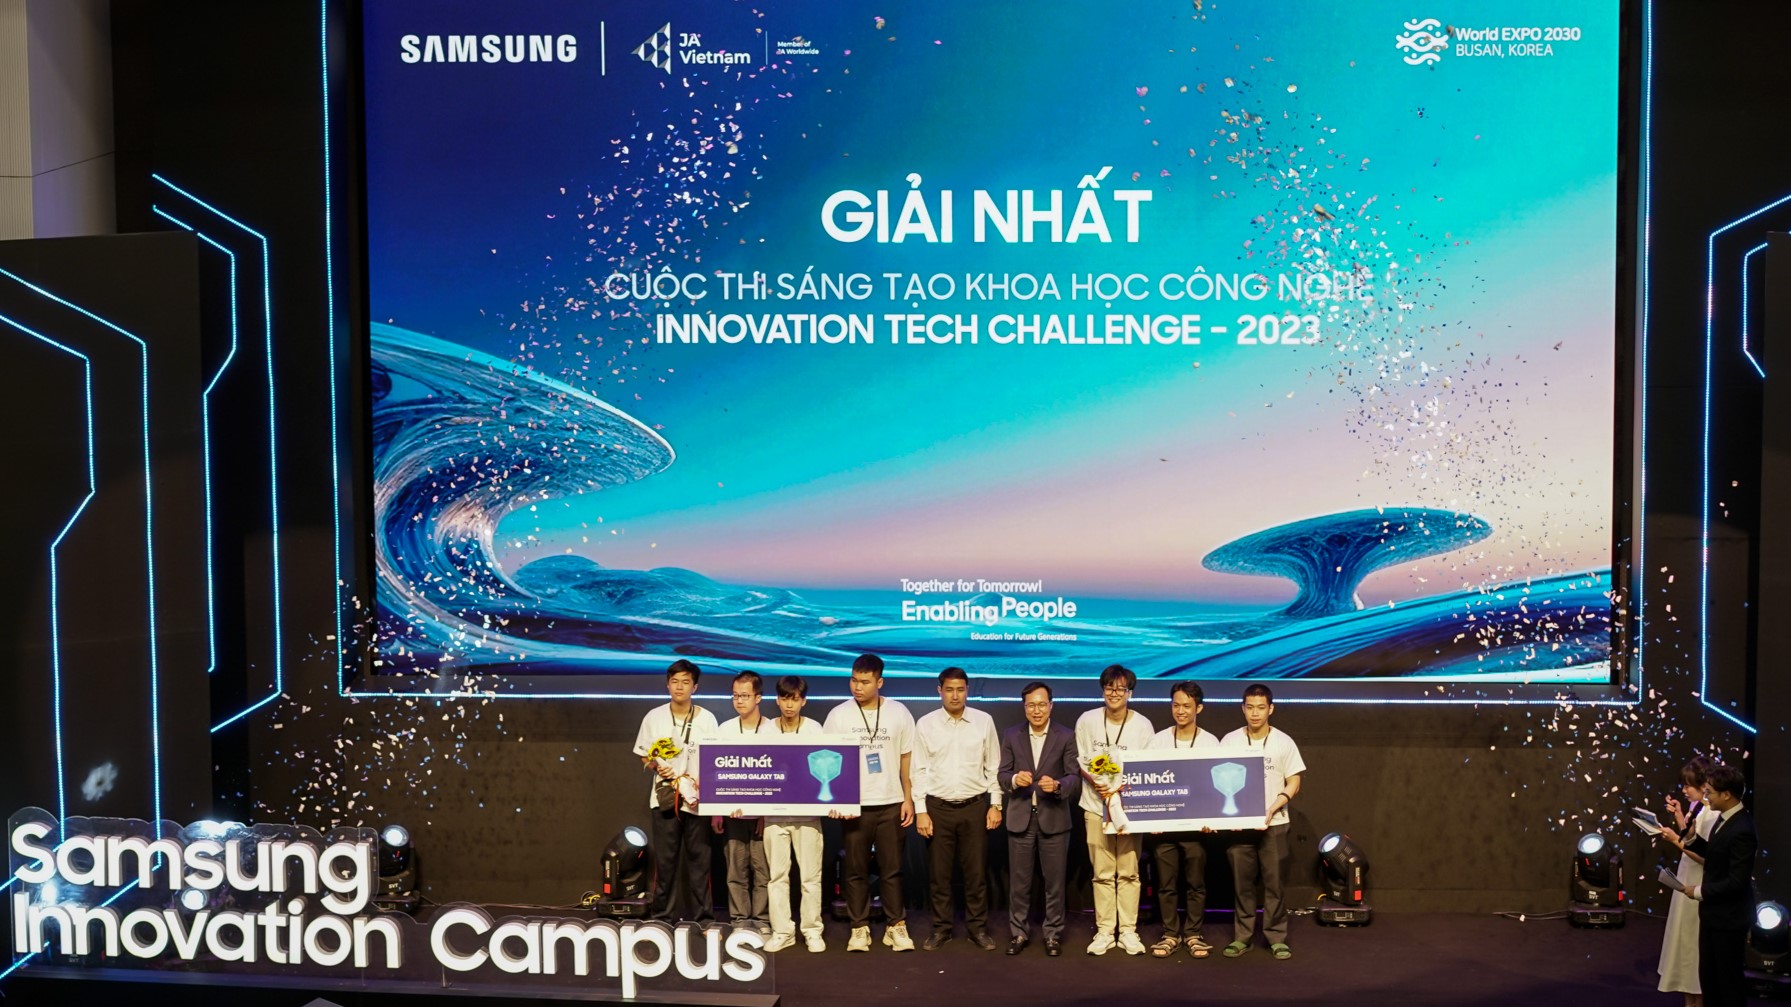 Samsung Innovation Campus 2022-2023 kết thúc, kiến thức công nghệ lan tỏa đến 12 tỉnh thành - Ong Choi Joo Ho trao giai cho 2 doi thi dat giai nhat Cuoc thi Sang tao Khoa hoc cong nghe Innovation Tech Challenge 2023